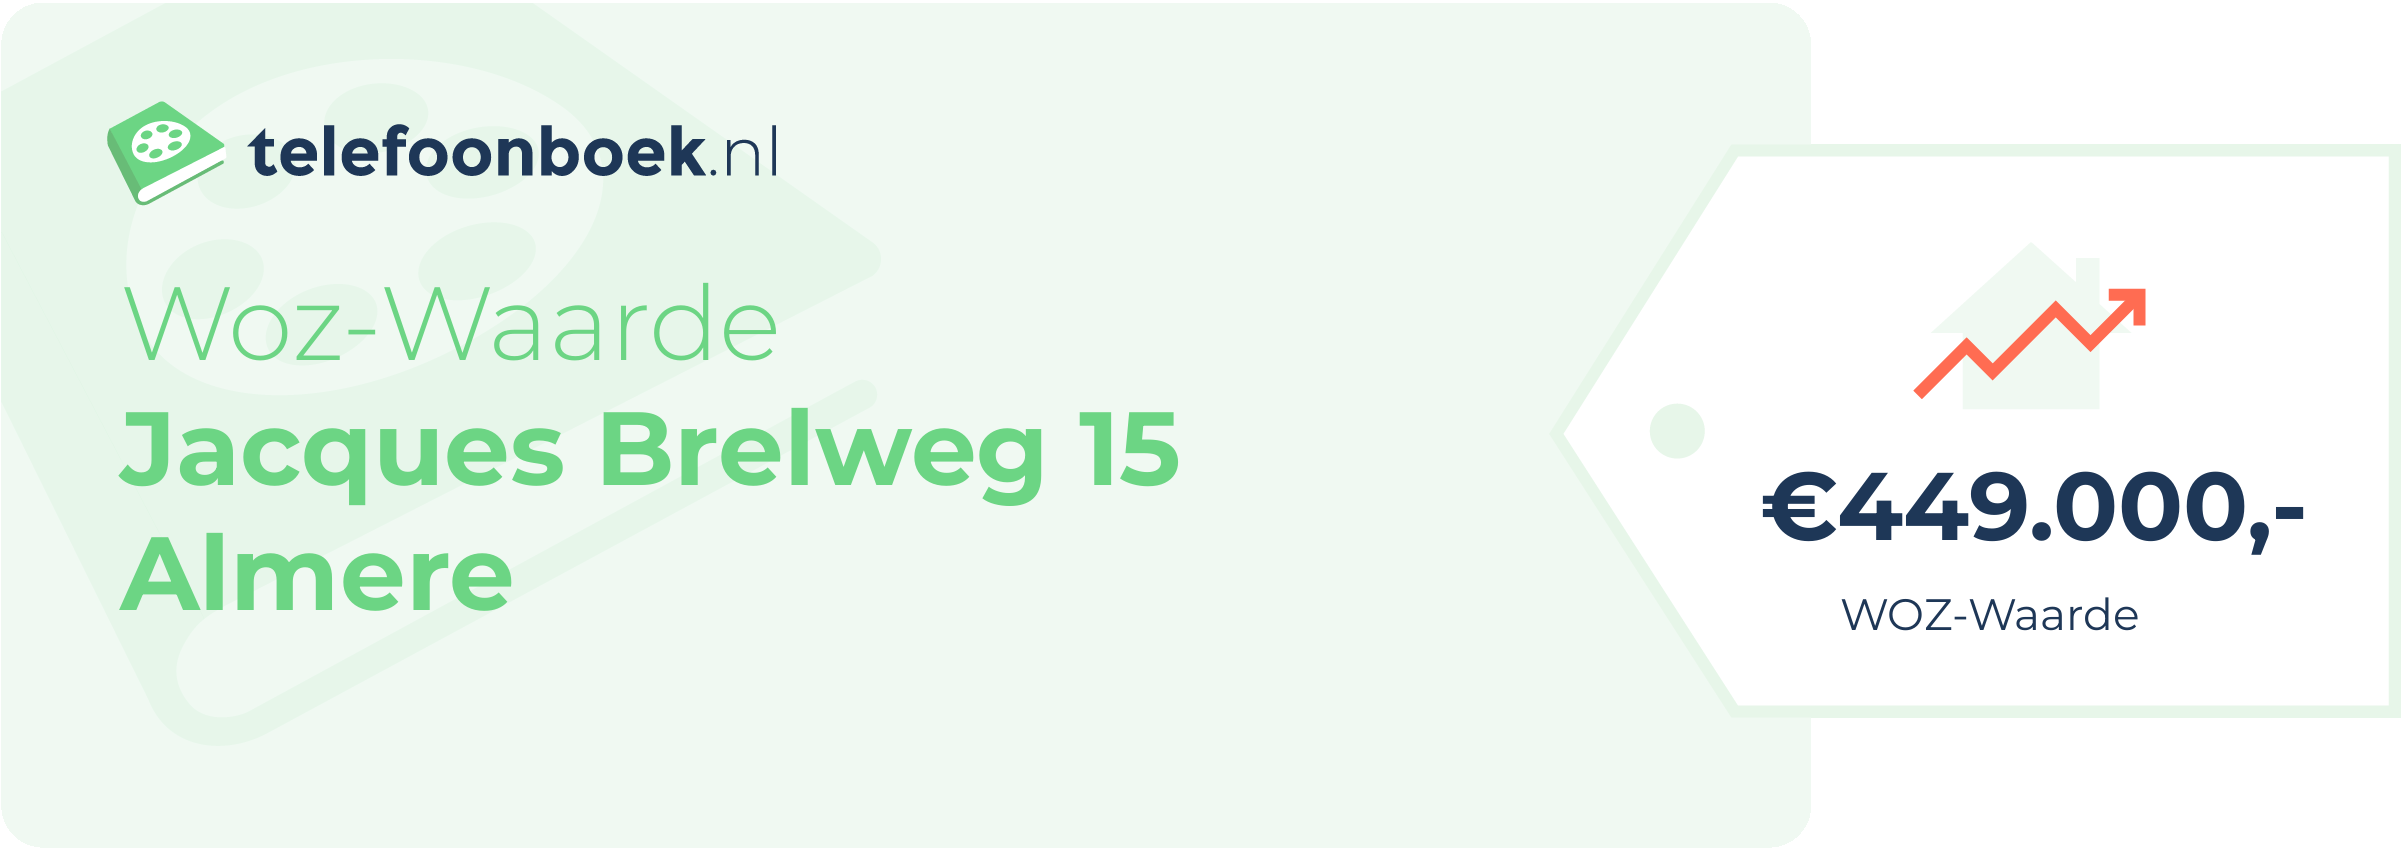 WOZ-waarde Jacques Brelweg 15 Almere